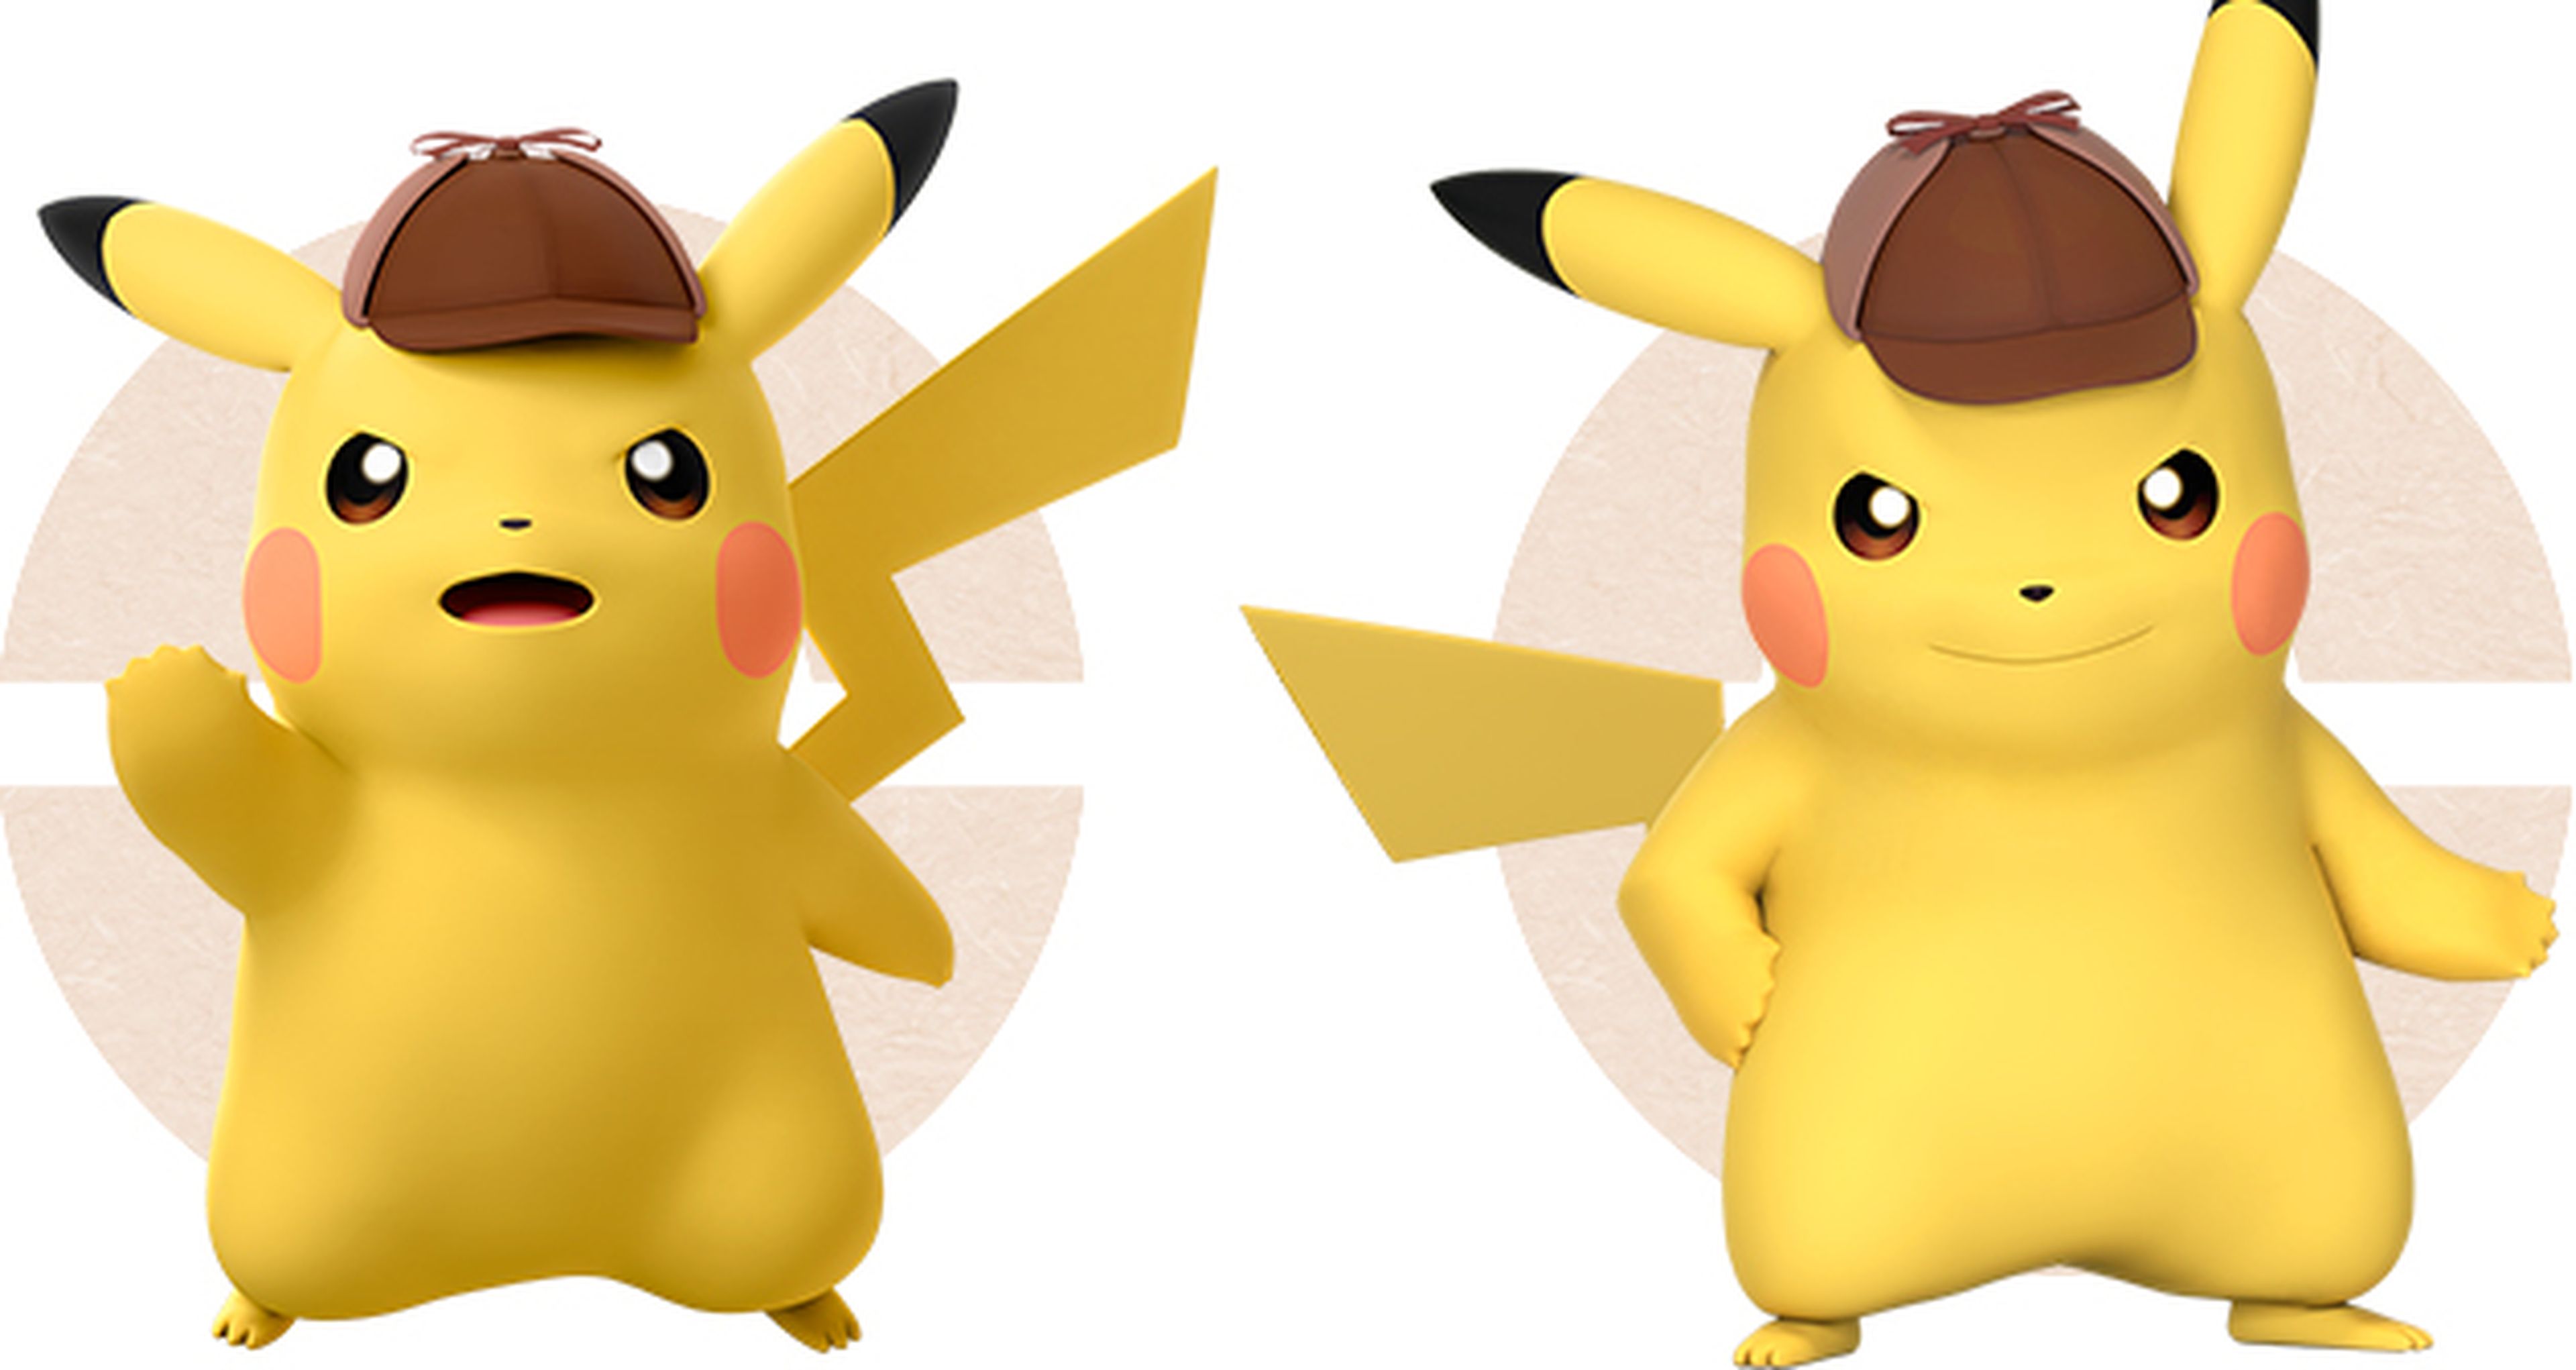 Detective Pikachu - Imágenes del nuevo juego de Pokémon para 3DS